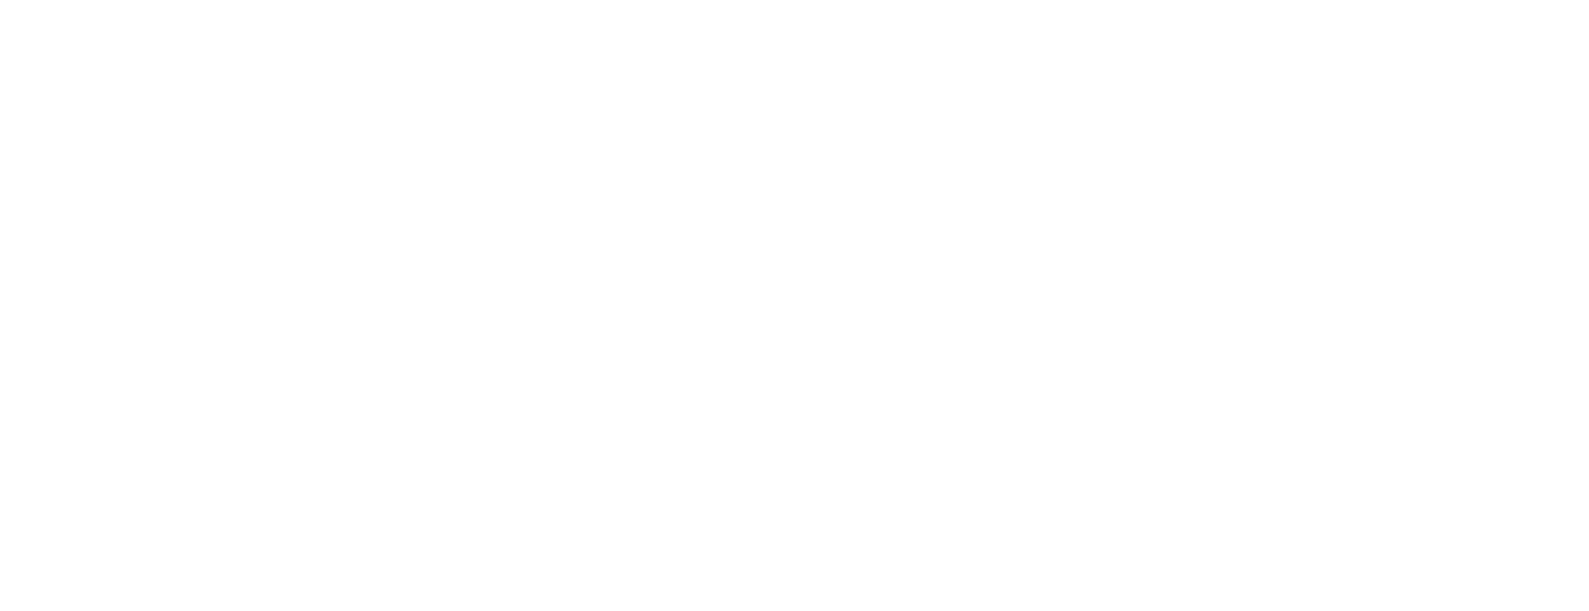 Online Scotland